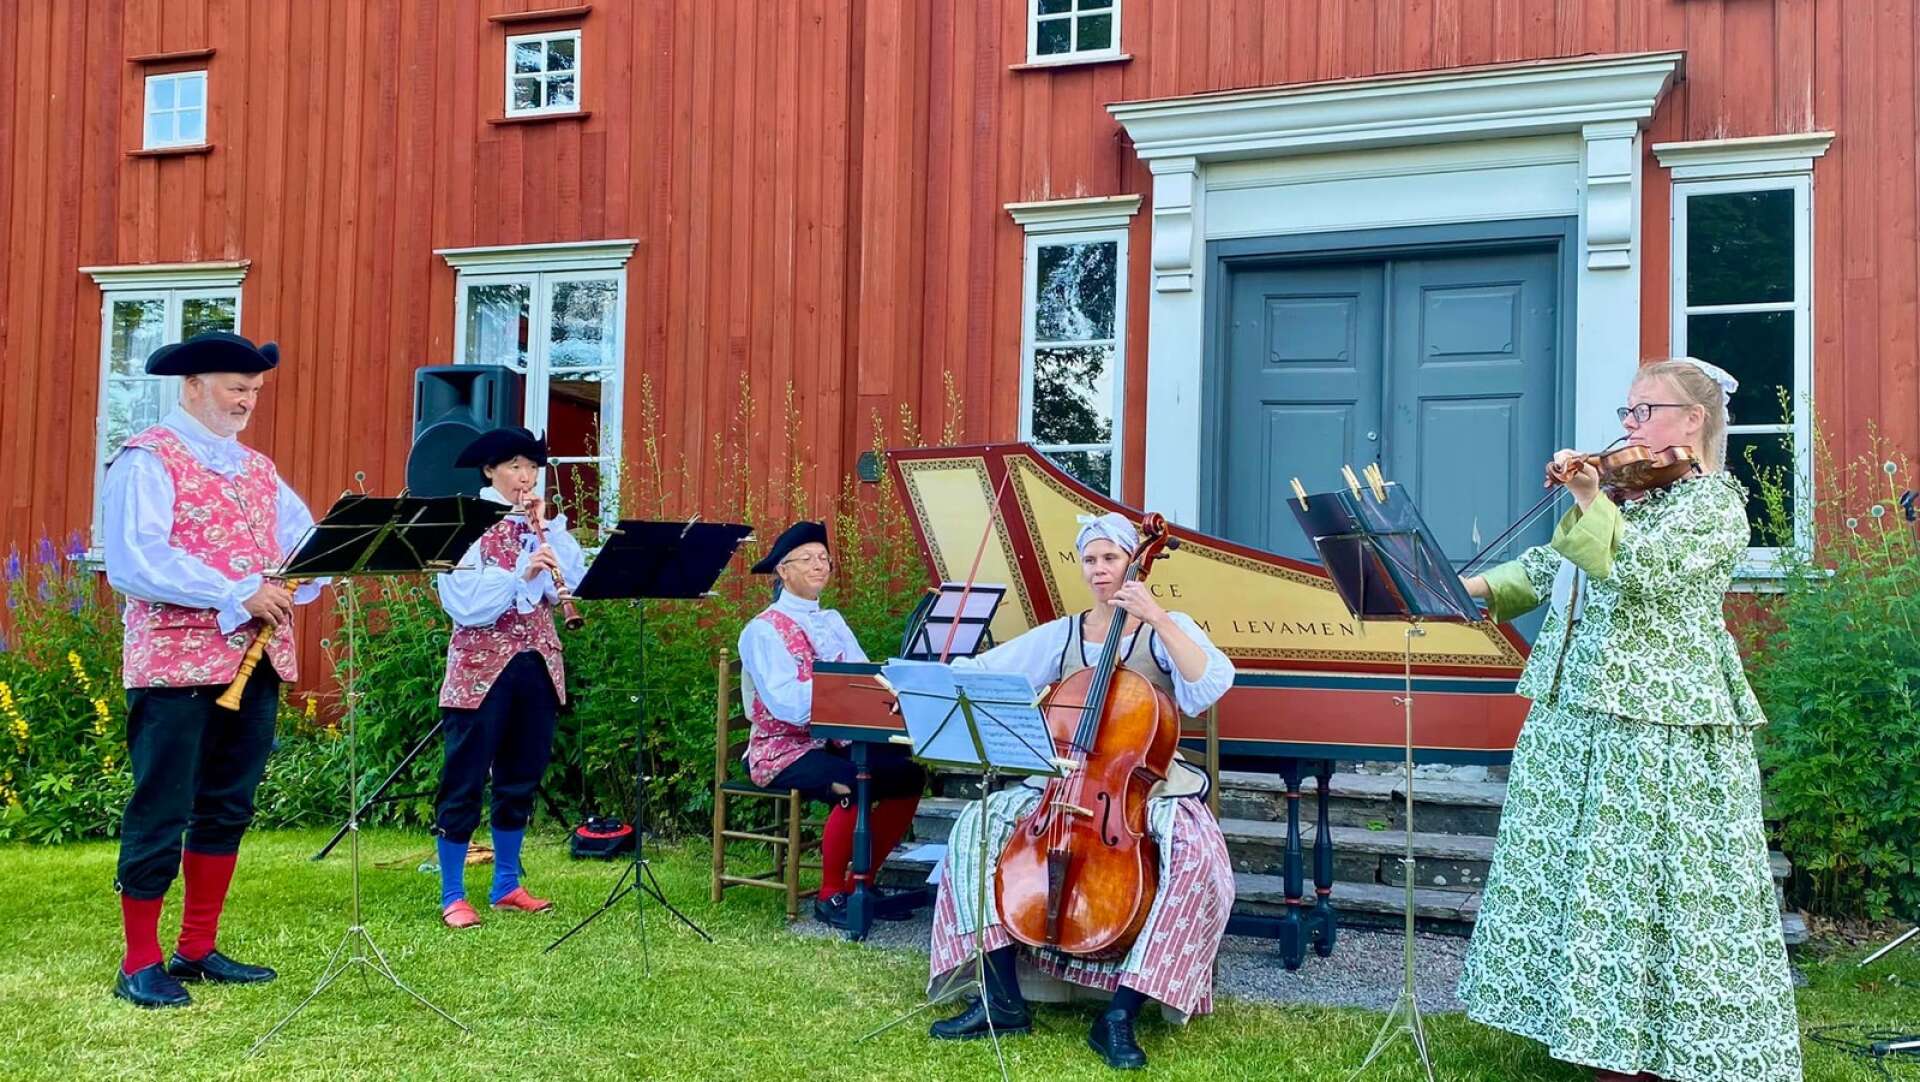 Ensemble Zellbell - Ulf Bjurenhed, Kyoko Nakazawa, Peter Lönnerberg, Jenny Lierud och Rebecka Karlsson - spelade musik som sällan eller aldrig har spelats i modern tid.